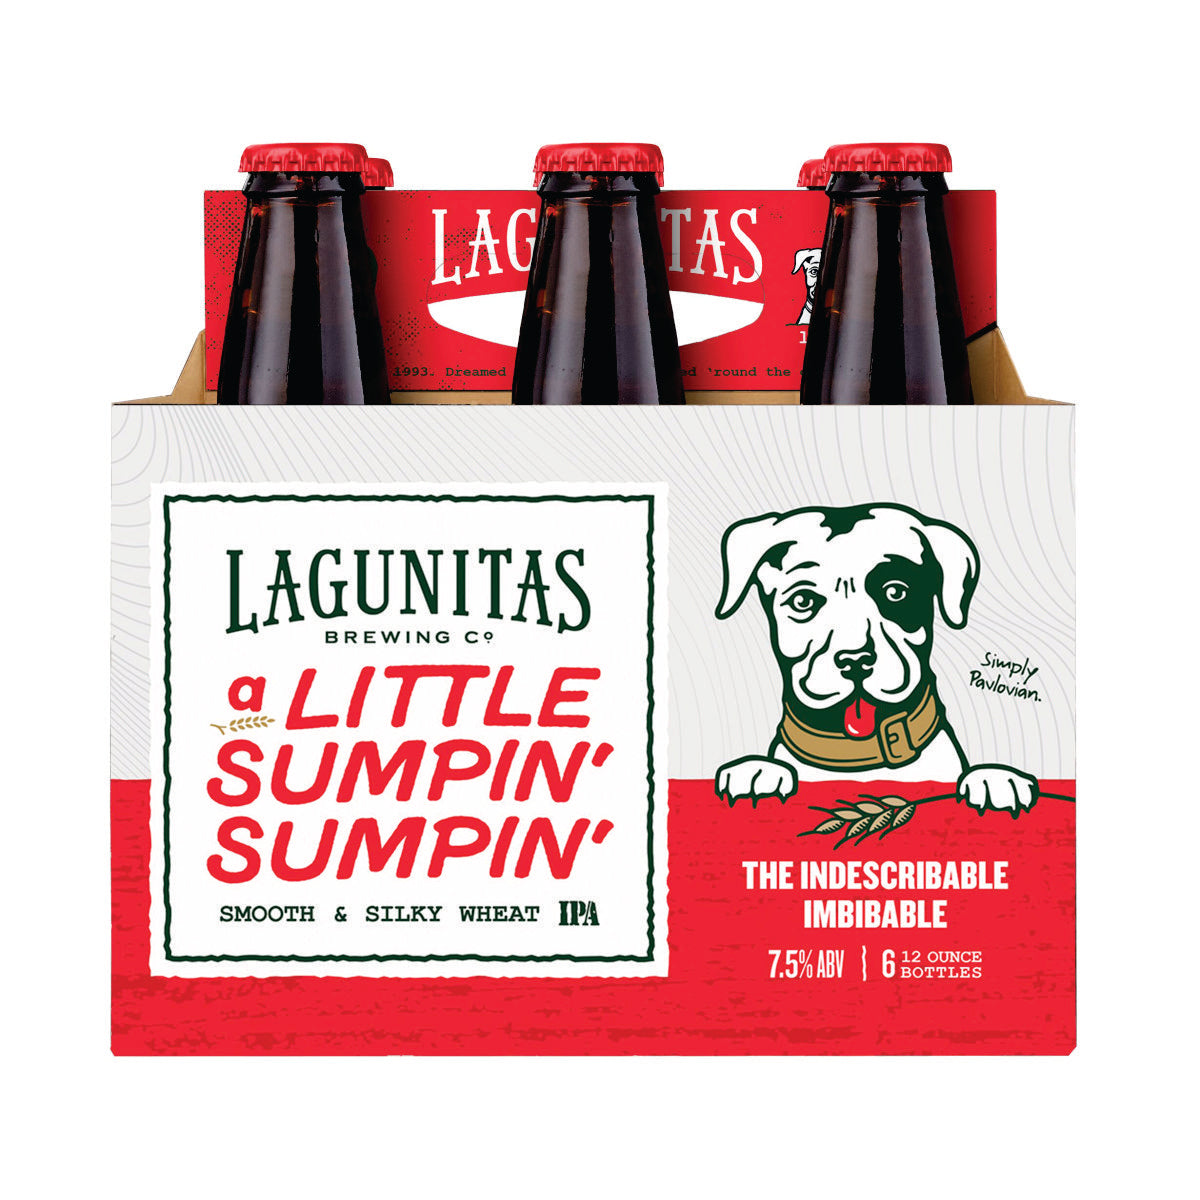 Lagunitas a Little Sumpin' Sumpin' 7.5% abv